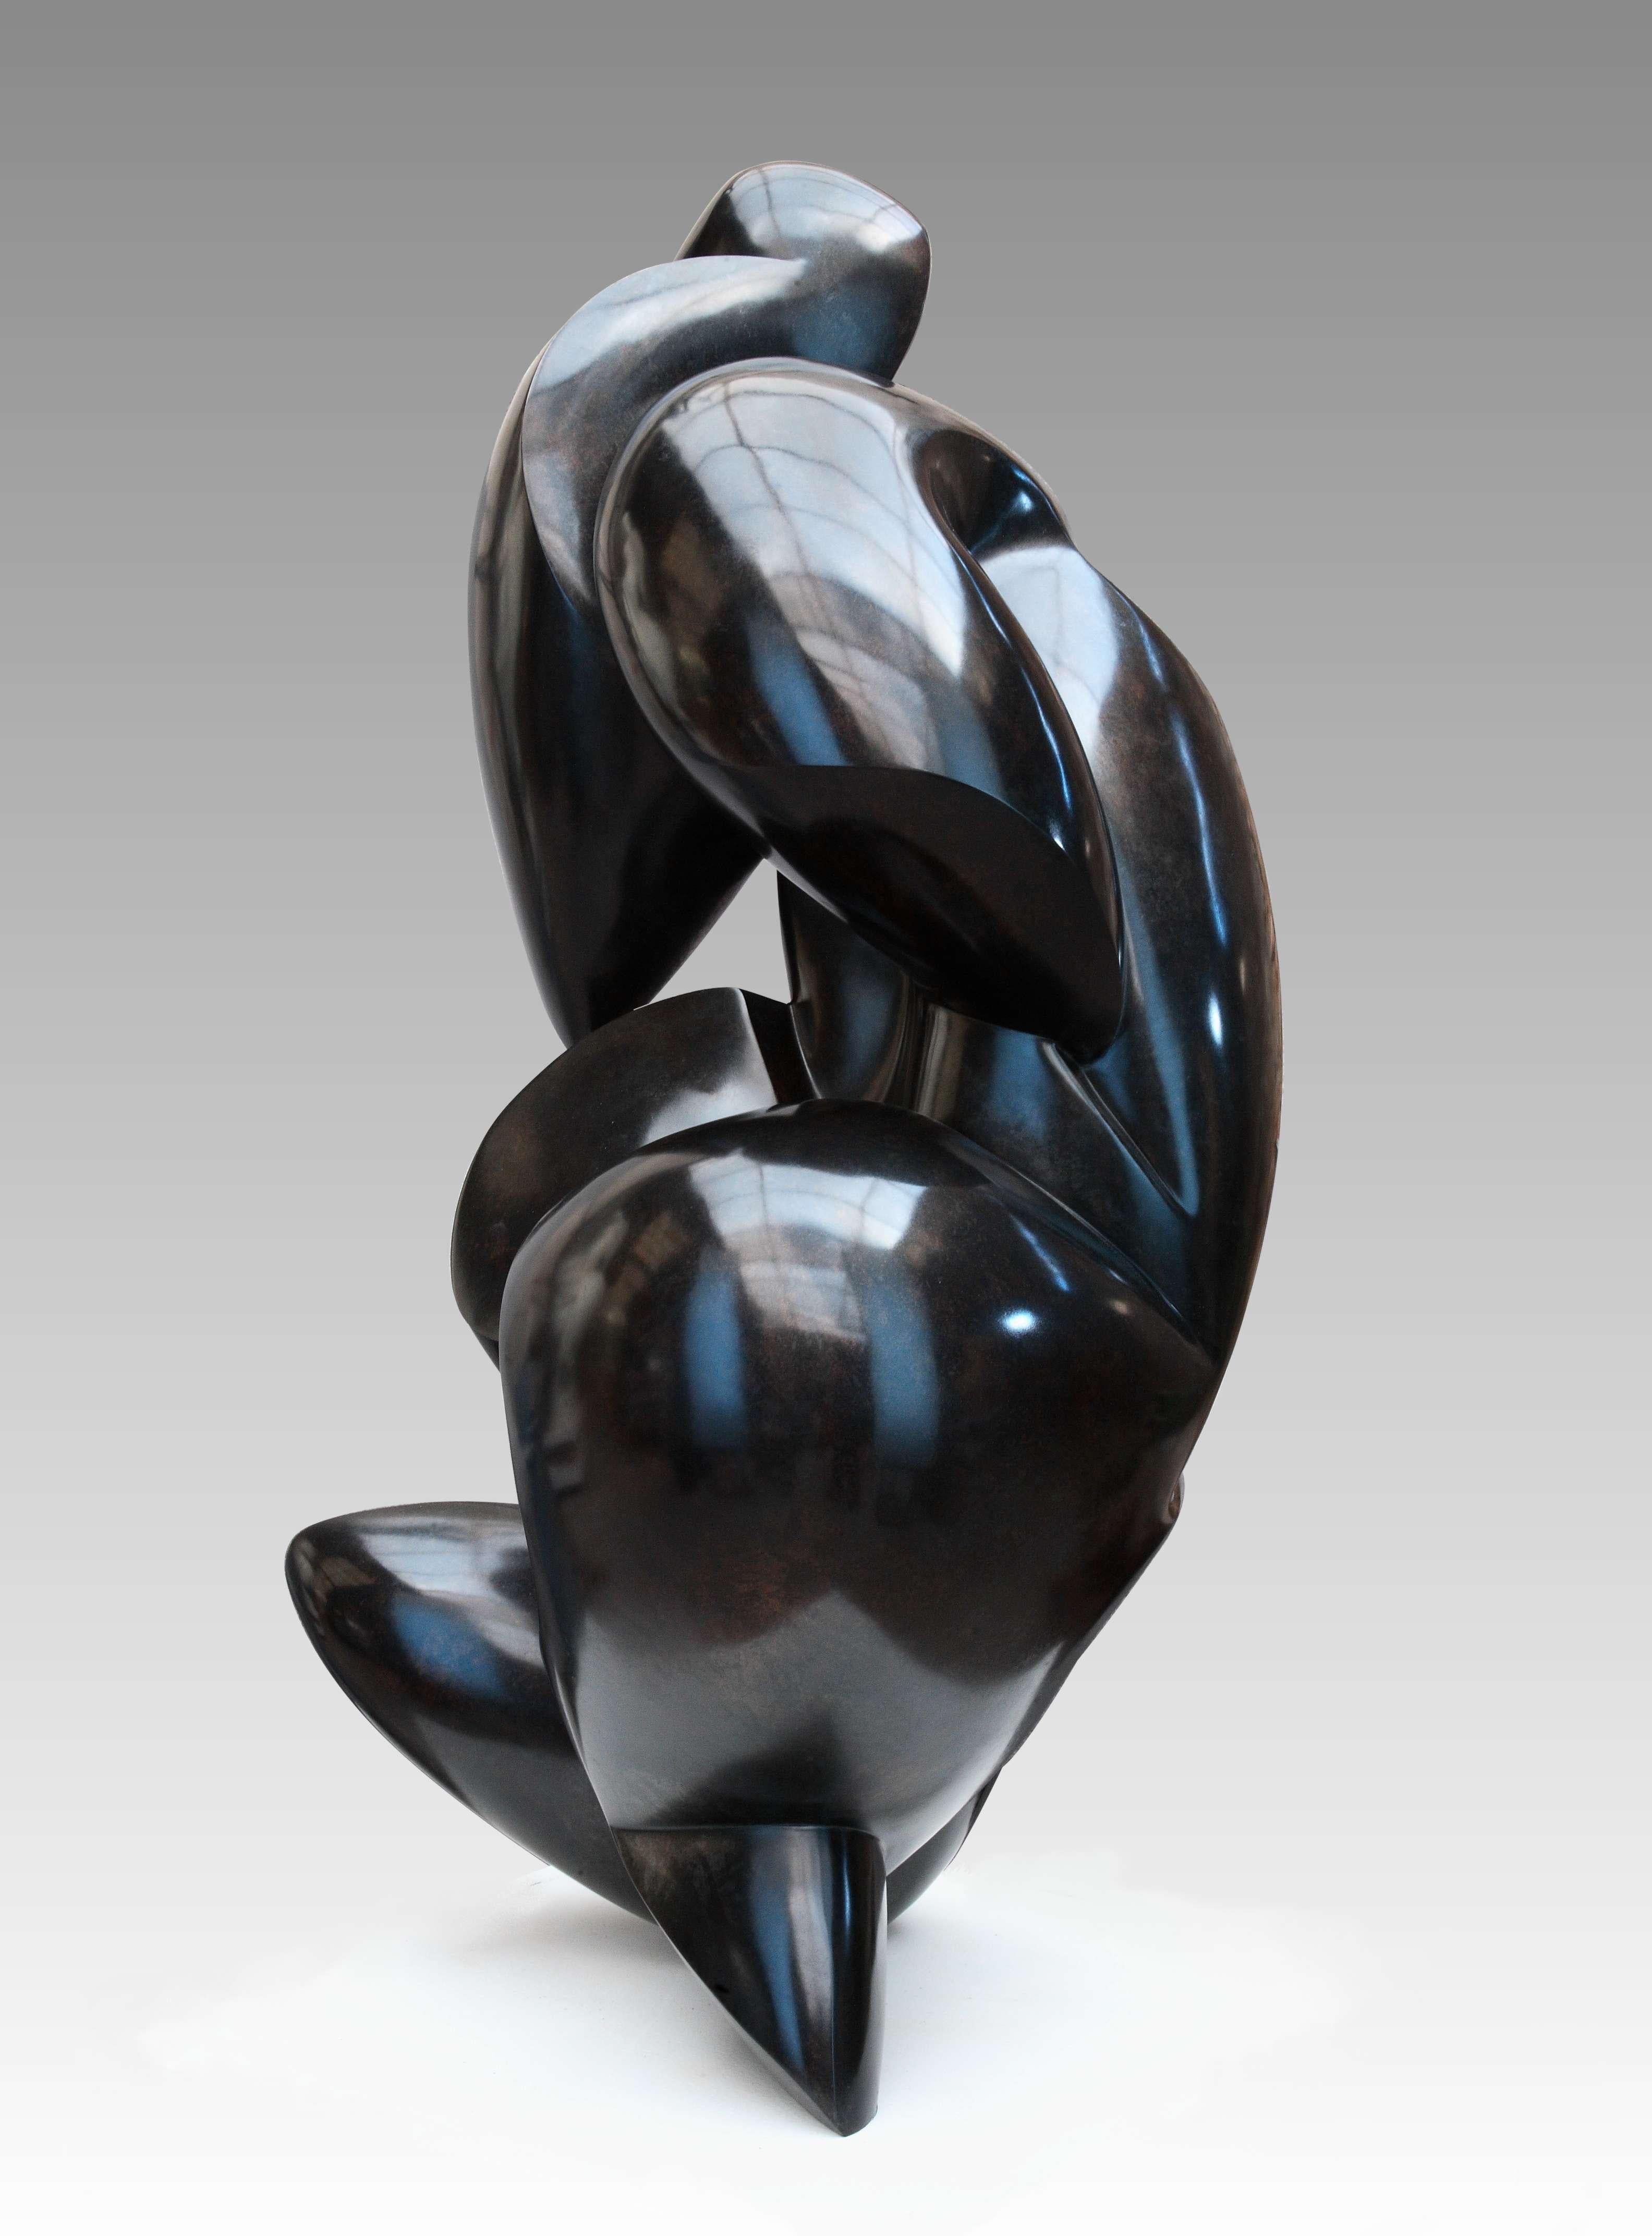 Pollès - Bronze-Skulptur - Zinzolibdène
2015
128 x 68 x 64 cm
Auflage: 1/3
Signiert und nummeriert

BIOGRAPHIE
Pollès wurde 1945 in Paris geboren
Wie Leonard de Vinci auf der Suche nach anatomischer Perfektion, nach der Darstellung von Bewegungen,